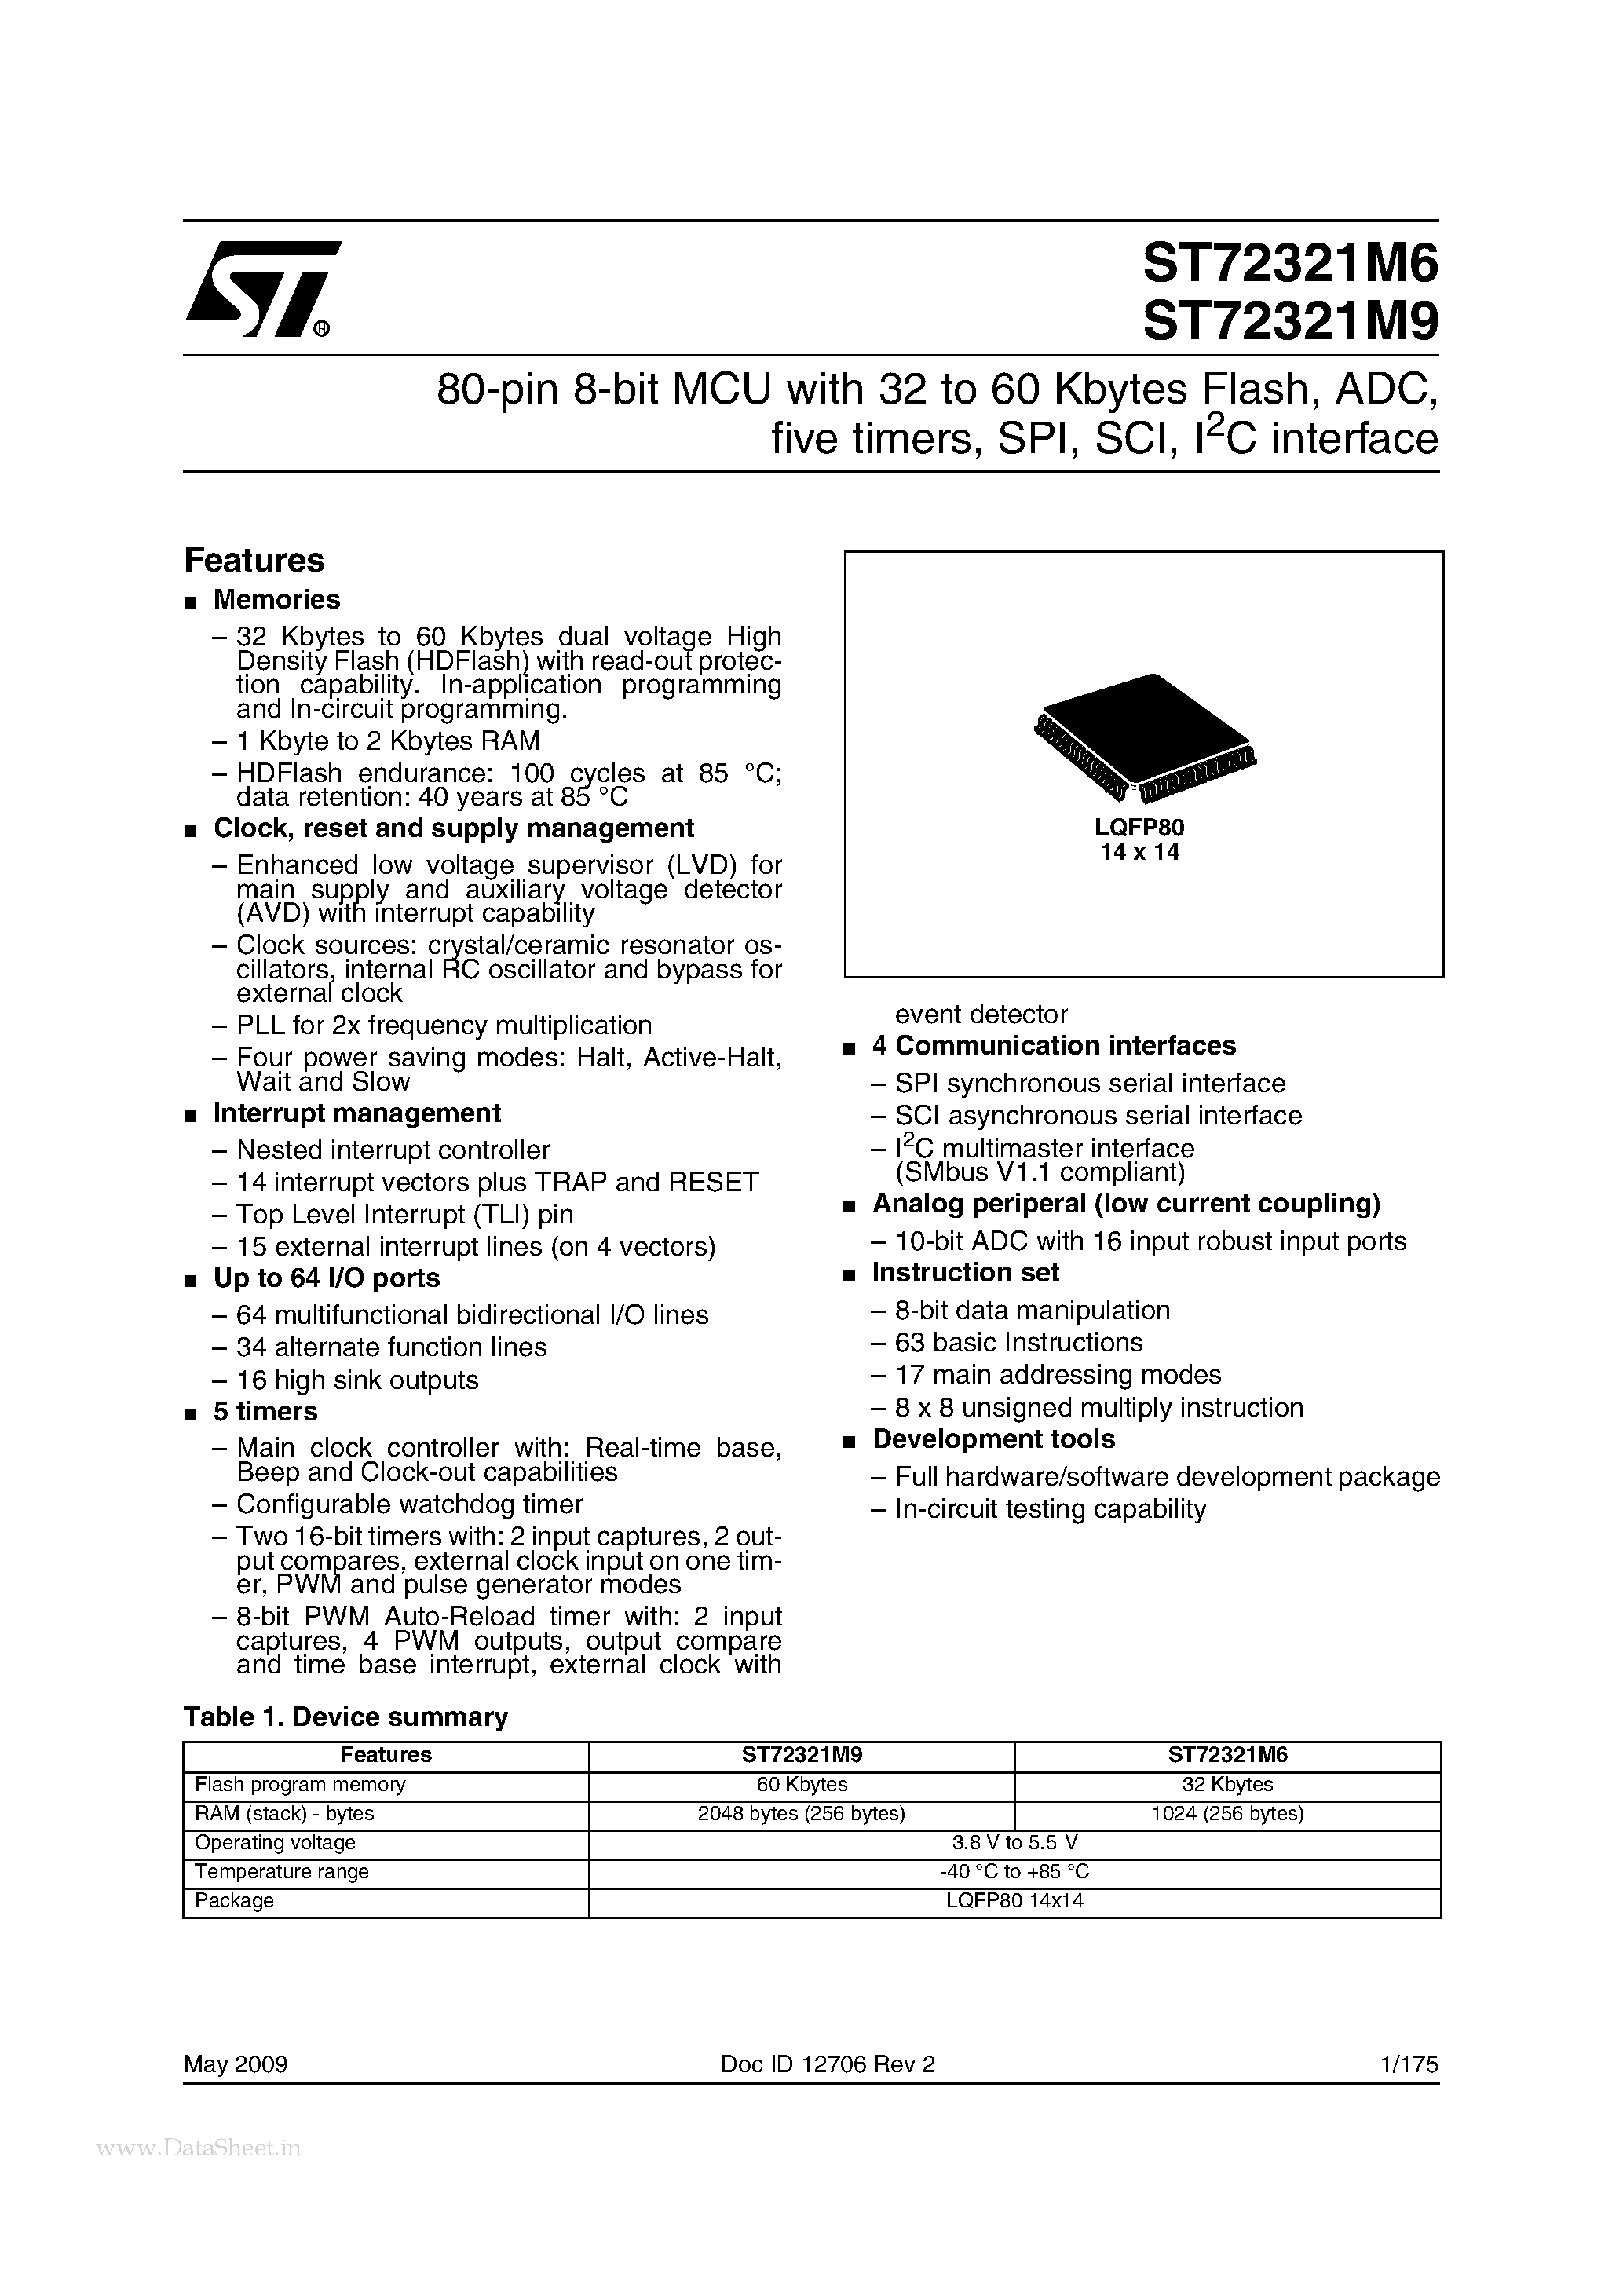 Даташит ST72321M6 - (ST72321M6 / ST72321M9) 80-pin 8-bit MCU страница 1